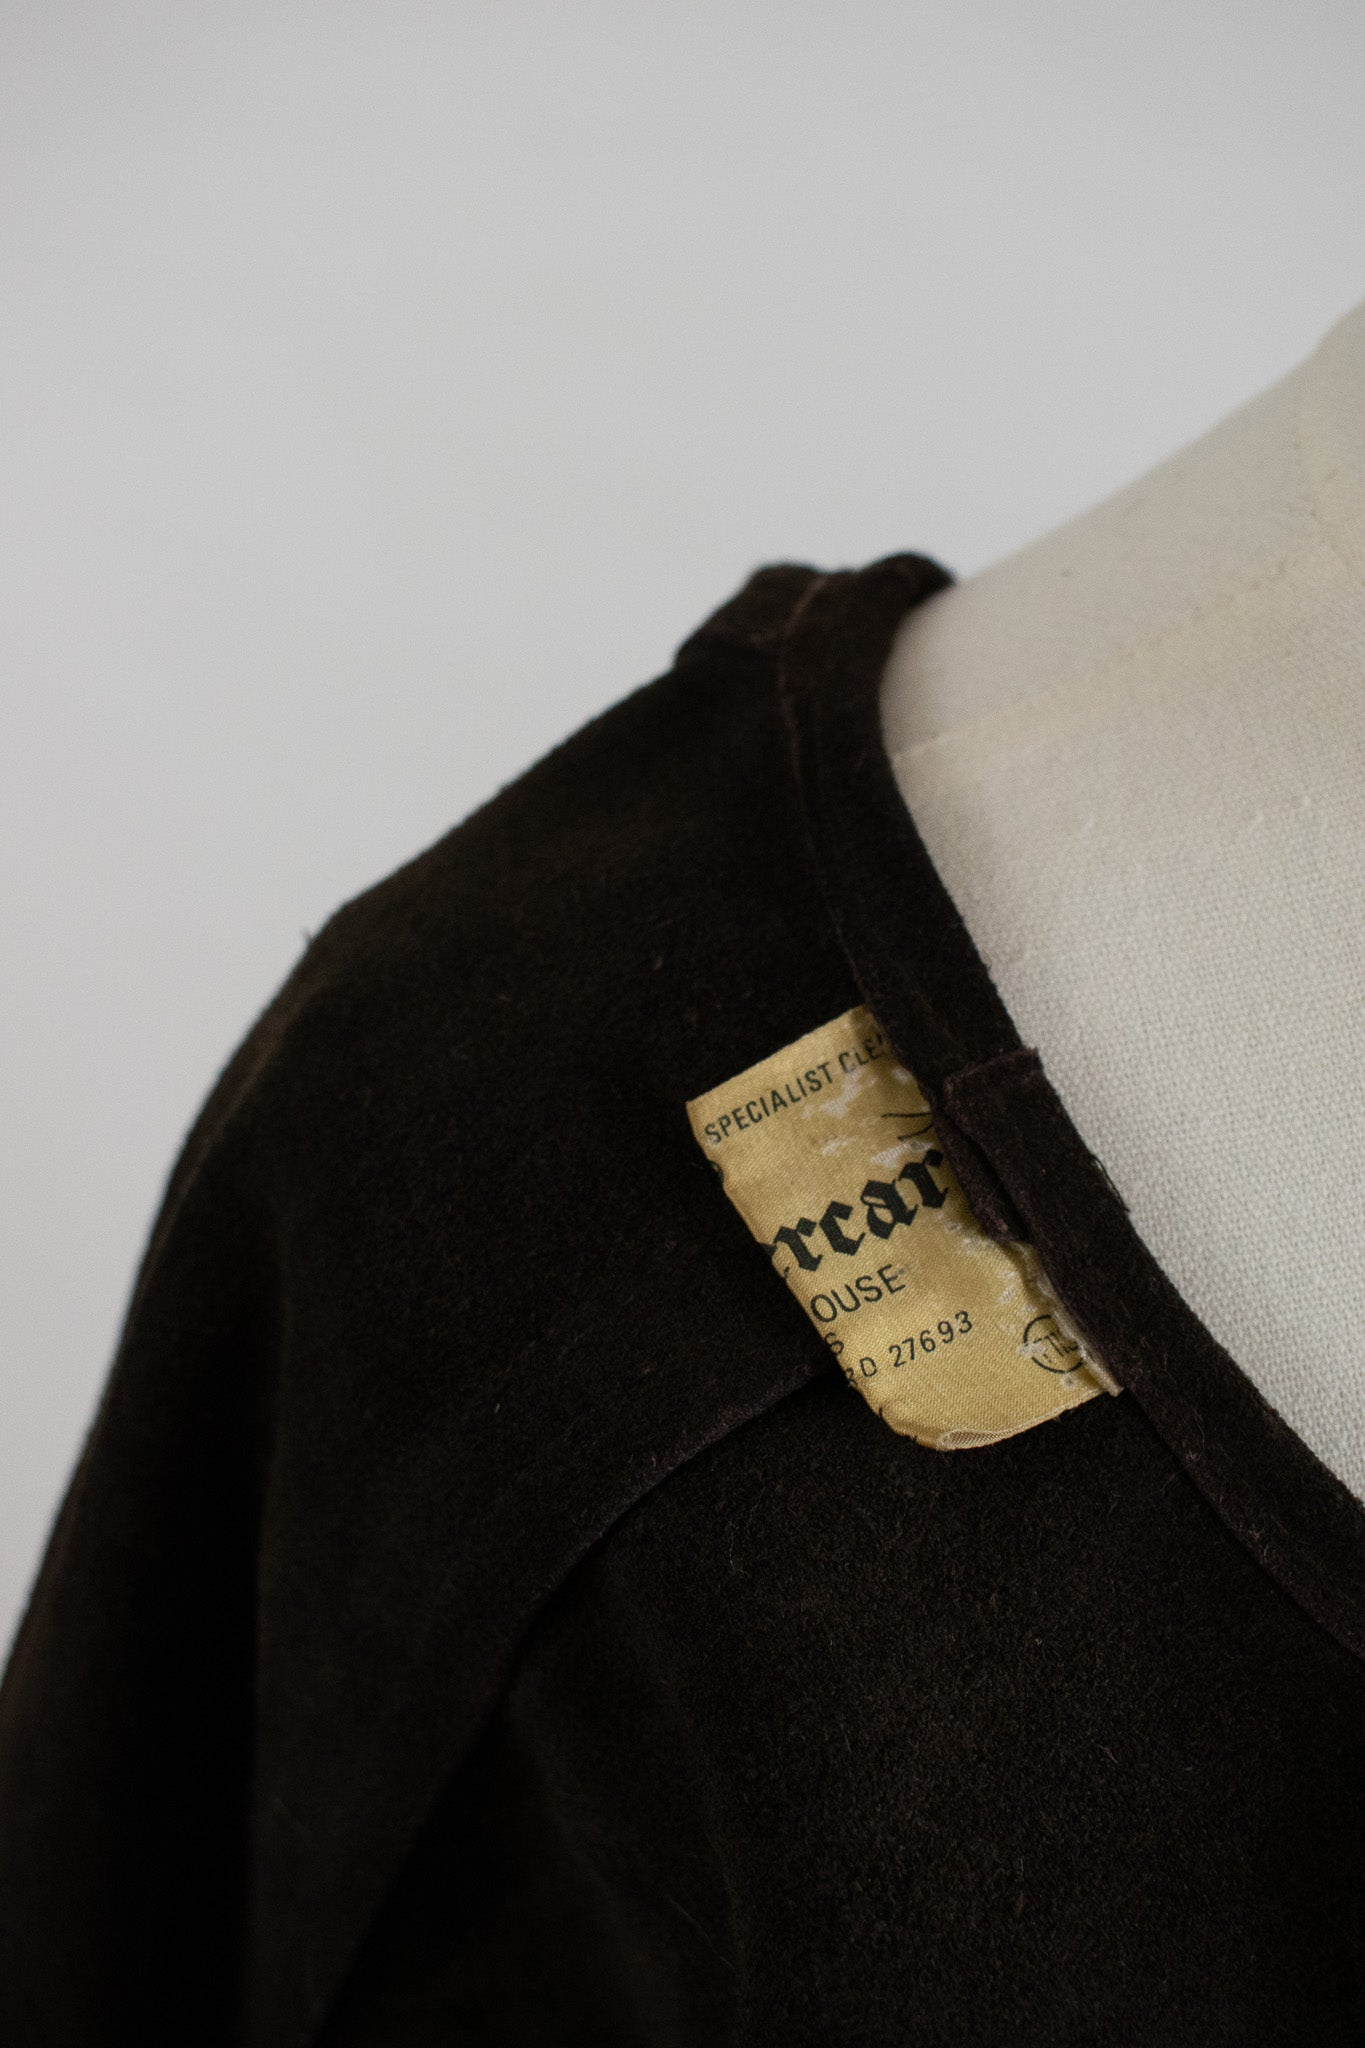 Vintage 1960s Dark Brown Suede Fringed Waistcoat Vest